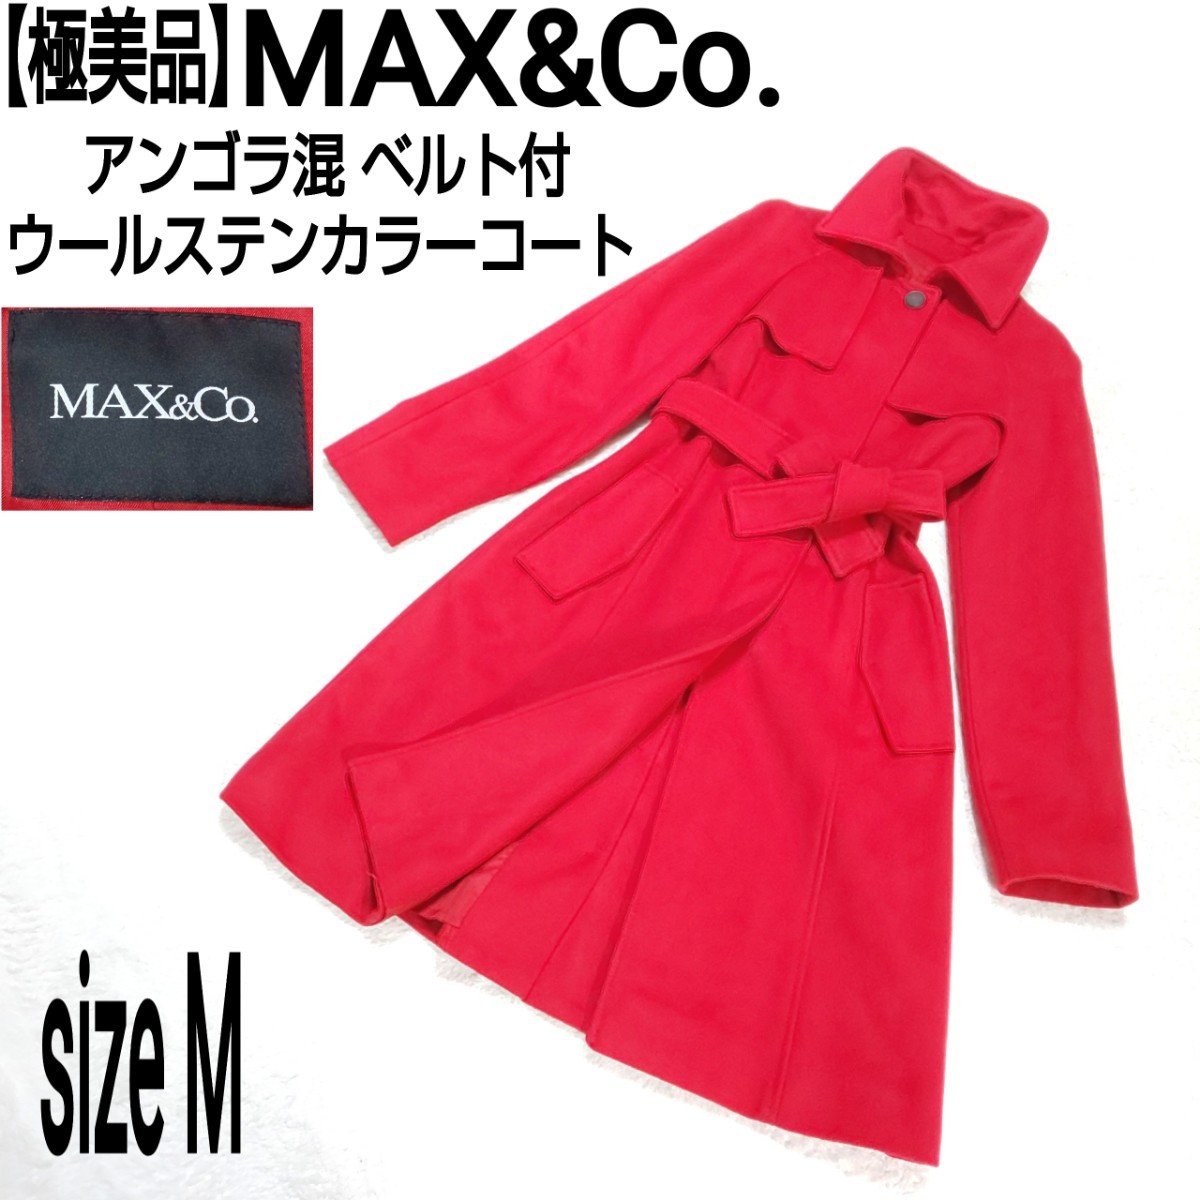 Max & co. マックスアンドコー ロング ステンカラー トレンチ コート-